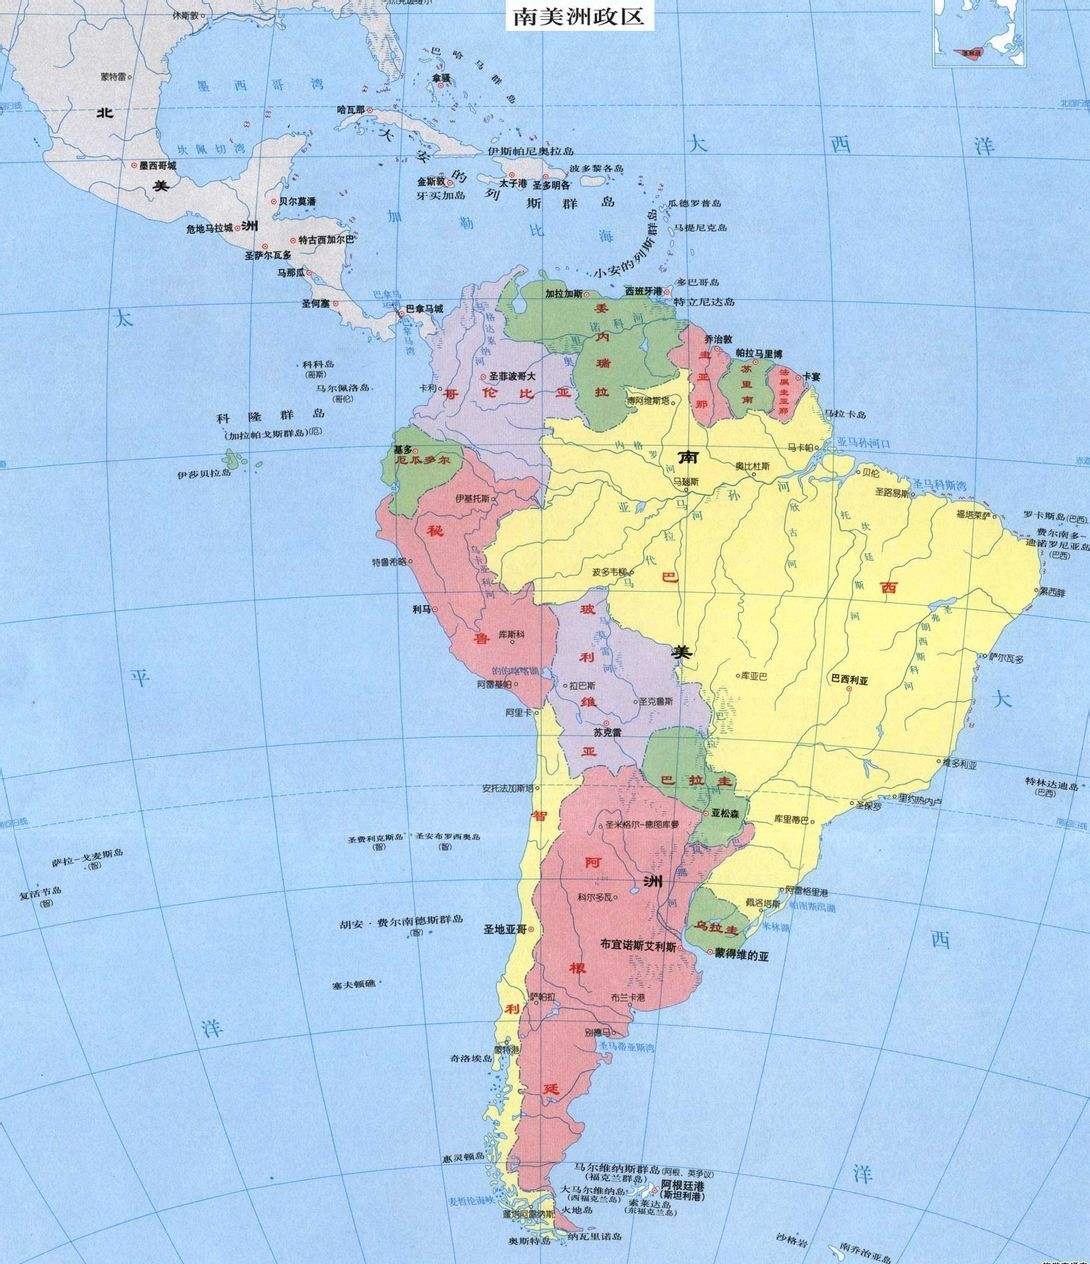 美洲的区域划分：北美、北美洲、中美洲、南美洲和拉丁美洲的关系